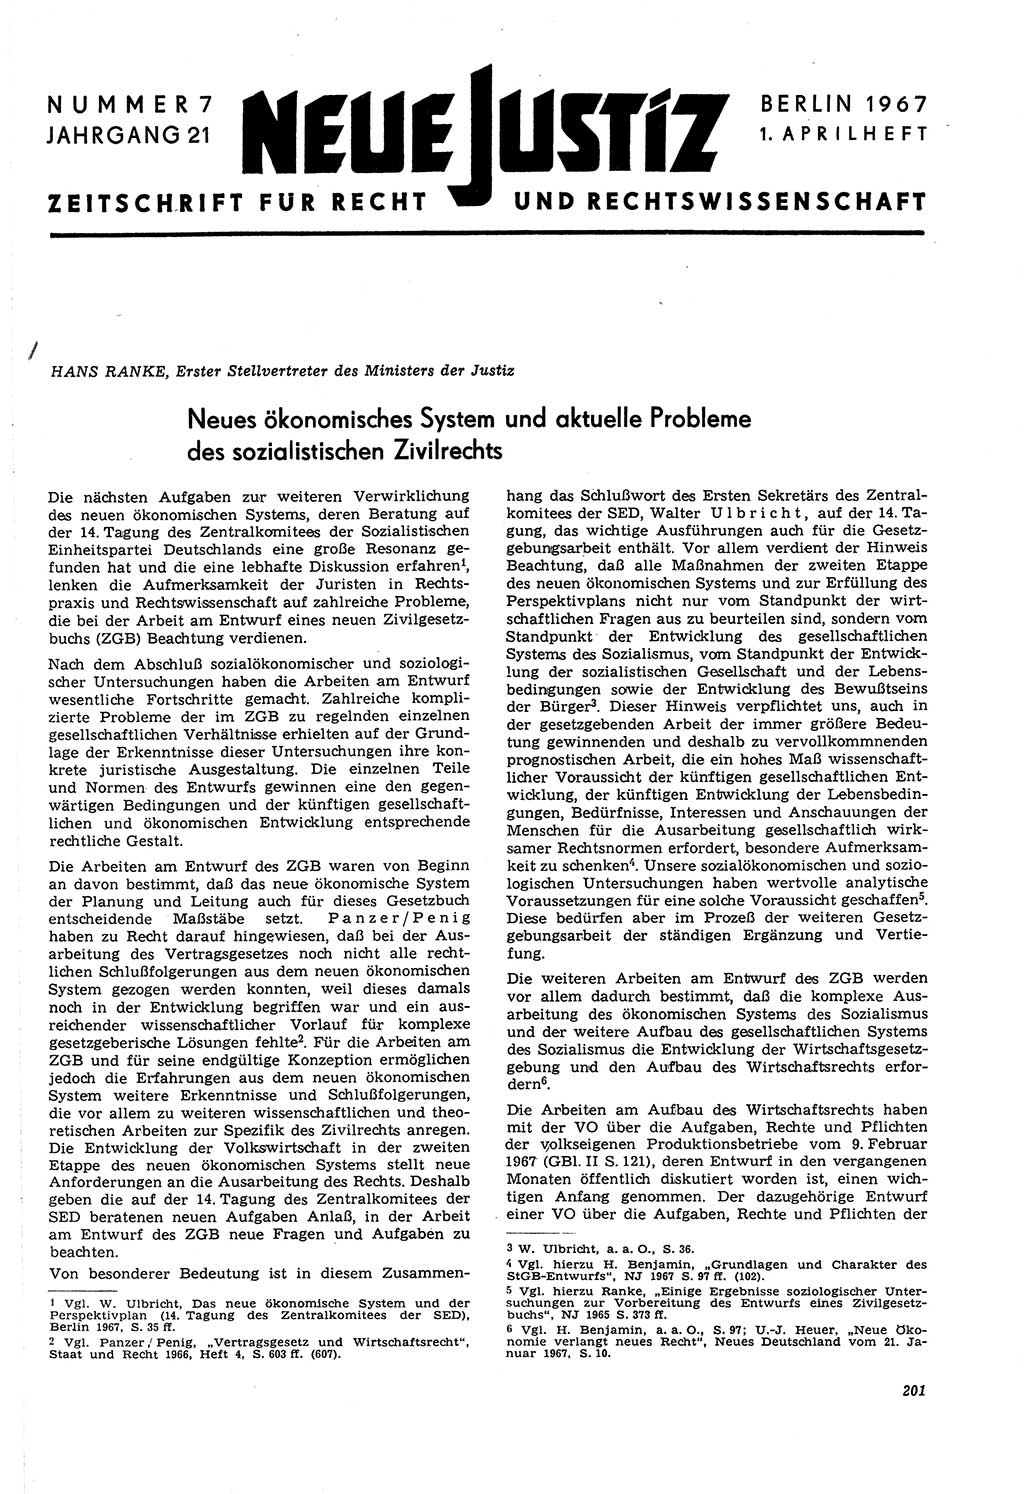 Neue Justiz (NJ), Zeitschrift für Recht und Rechtswissenschaft [Deutsche Demokratische Republik (DDR)], 21. Jahrgang 1967, Seite 201 (NJ DDR 1967, S. 201)